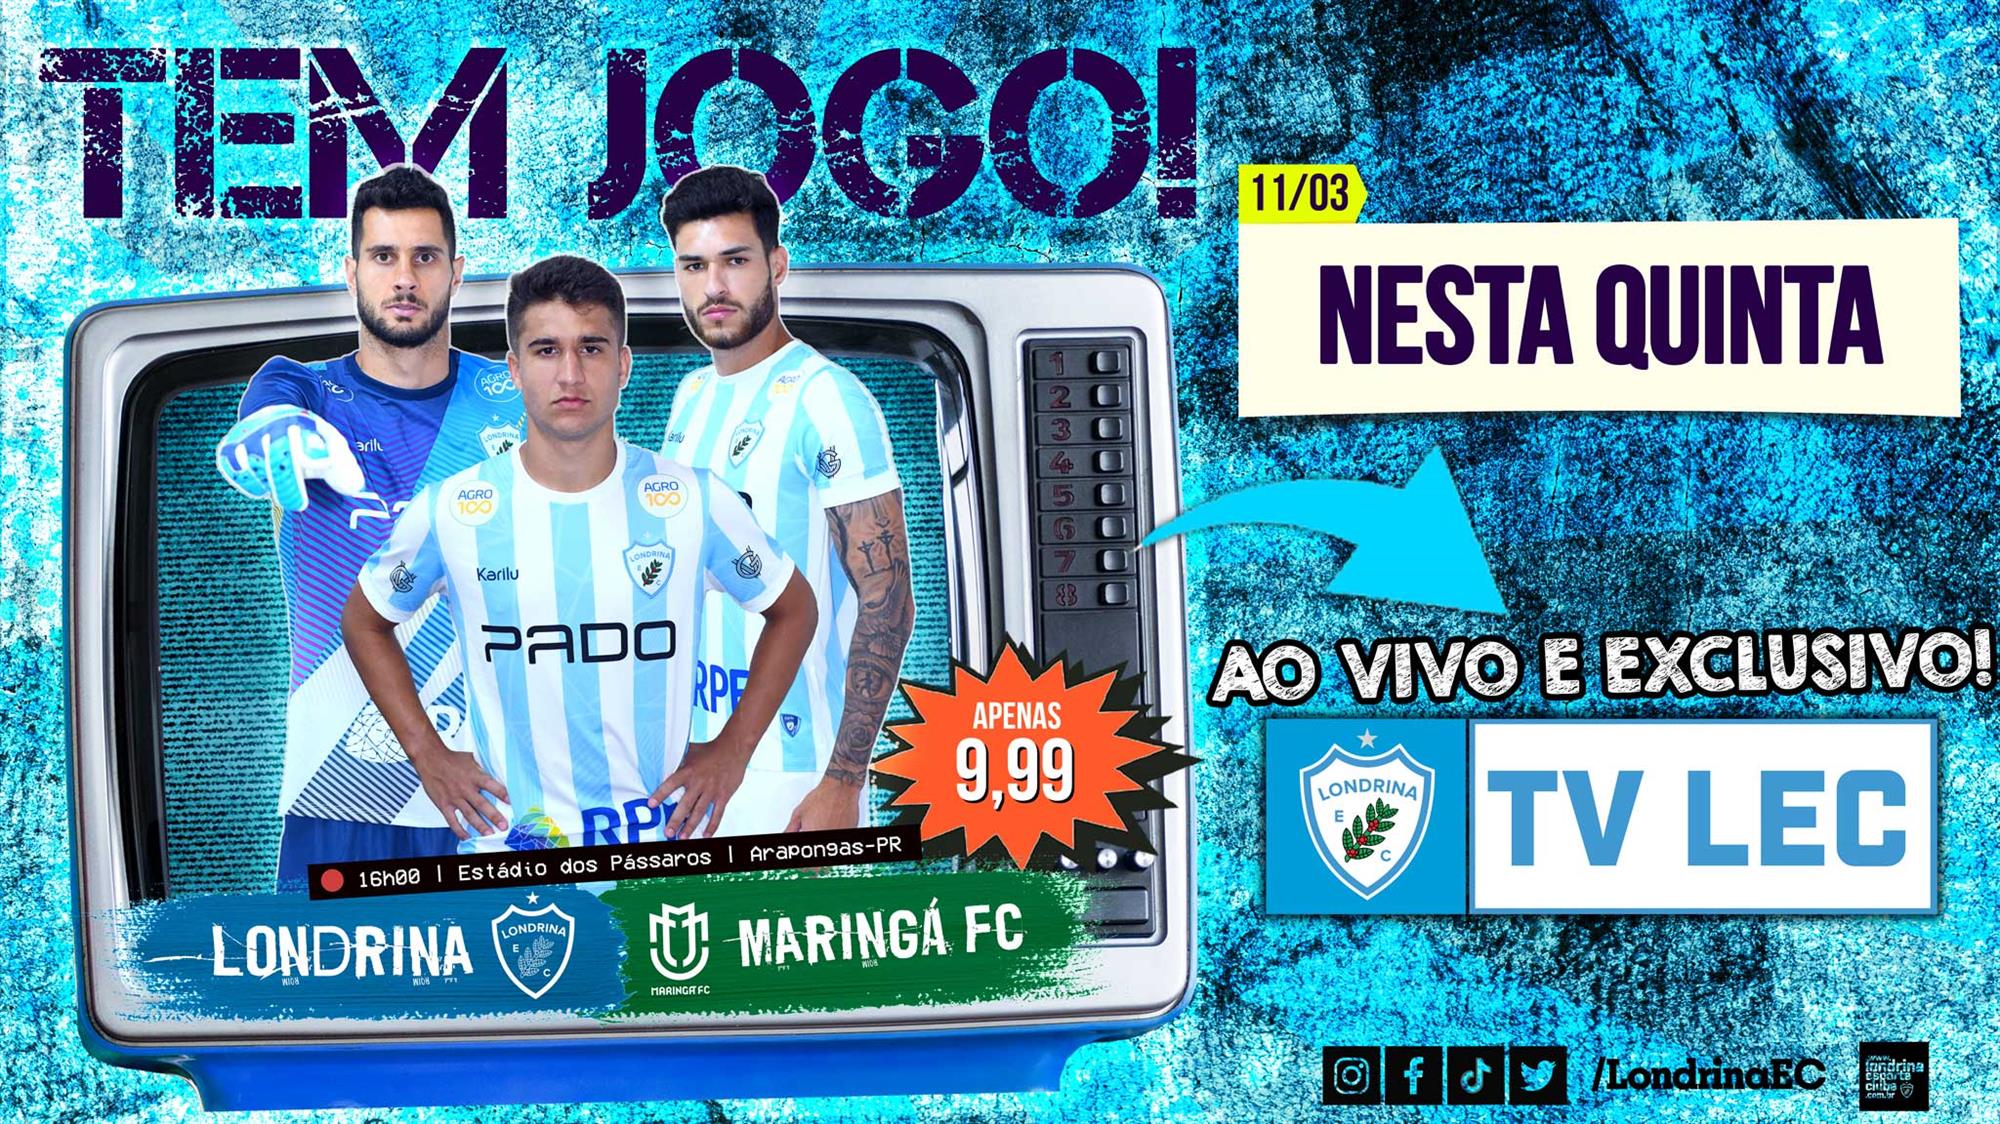 TV LEC transmite ao vivo Londrina x Maringá FC; Veja como garantir o seu ingresso!